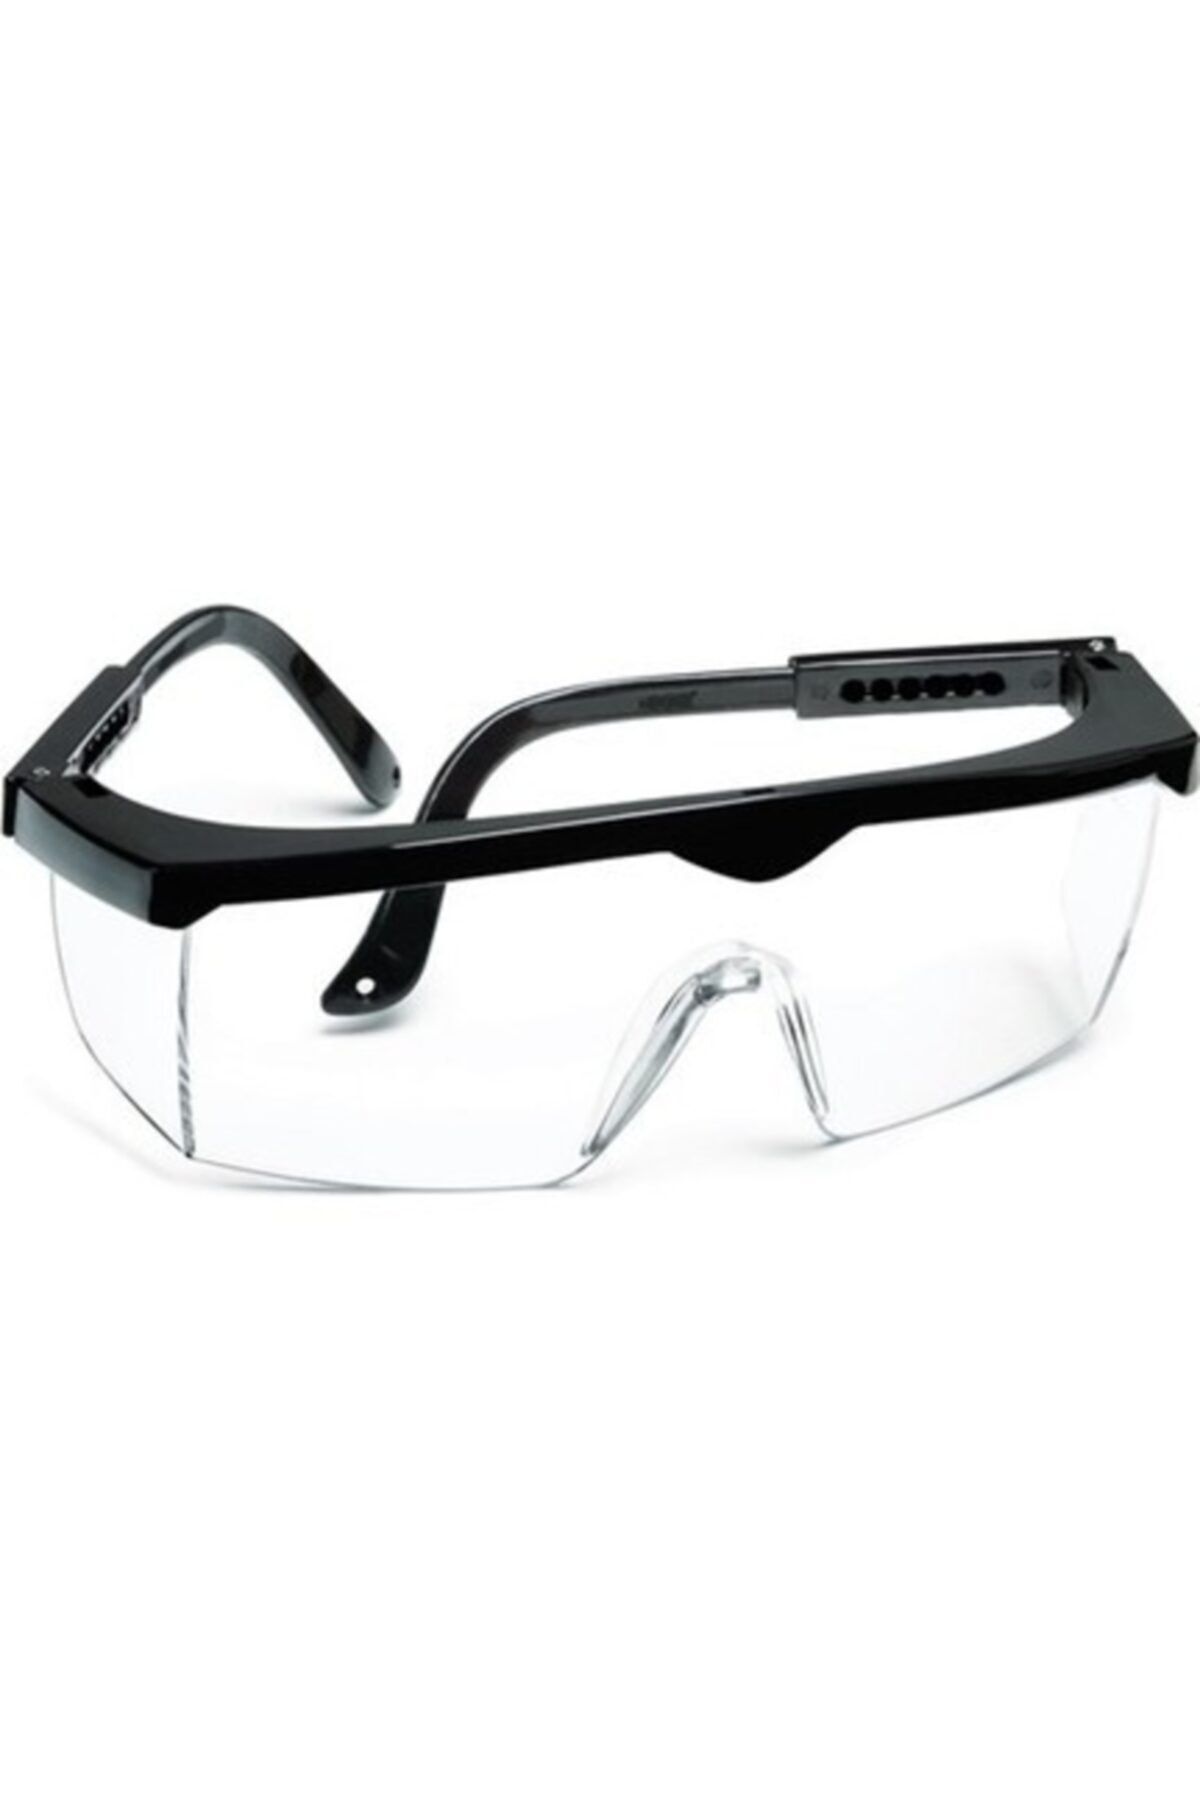 Eltos Şeffaf Ayarlanabilir Çapak Gözlüğü Ce Standart Koruyucu Gözlük 3 Adet